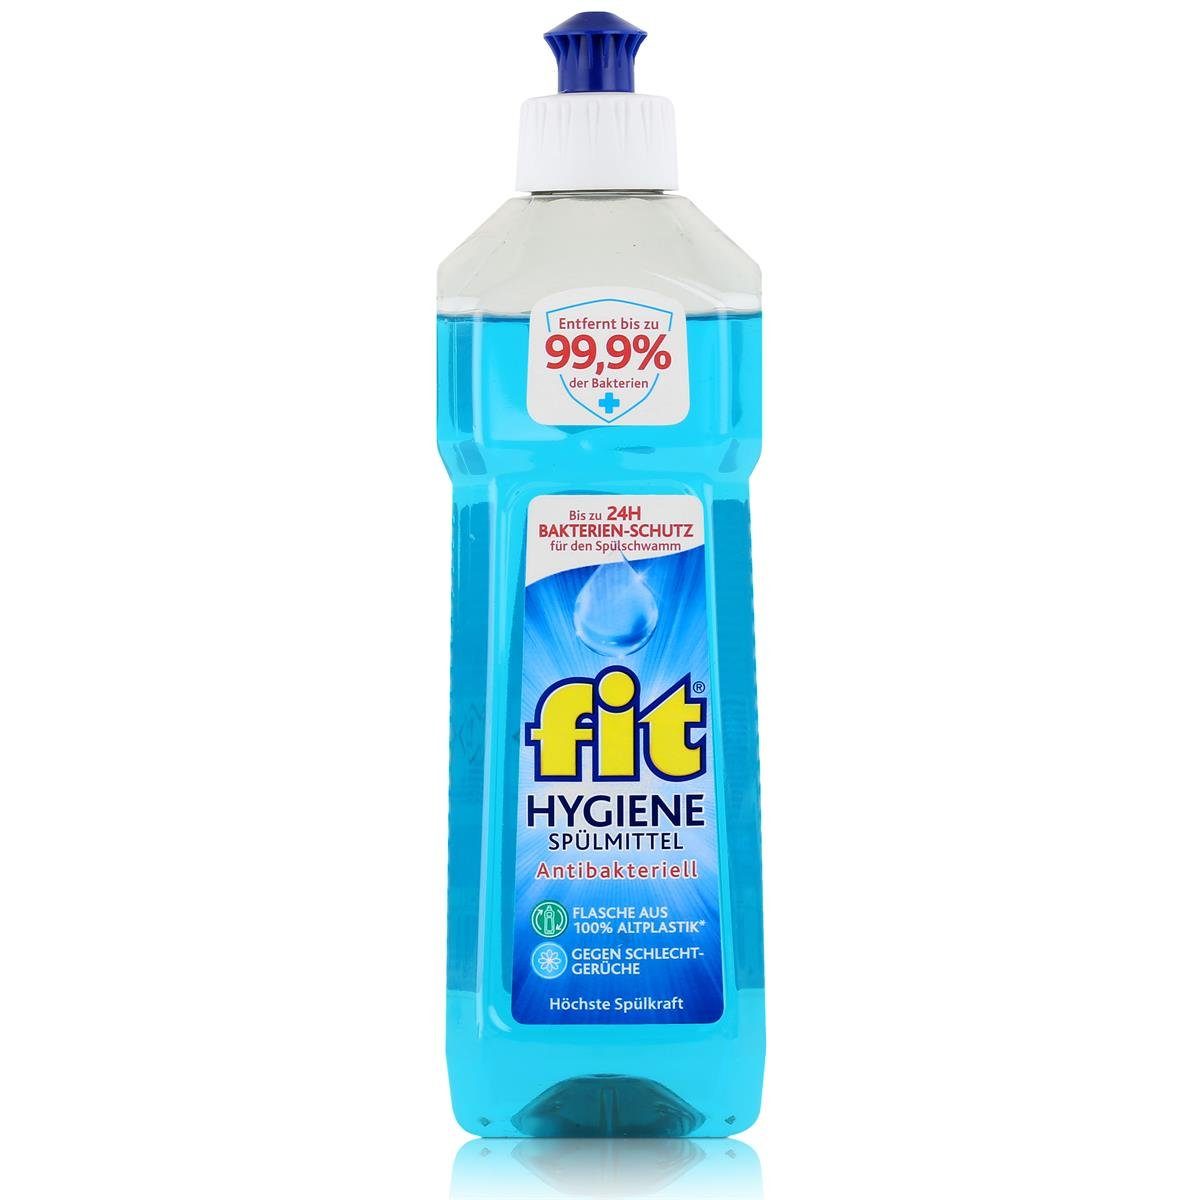 Hygiene Geschirrspülmittel Spülkraft Anti. Pack) Höchste fit - Spülmittel 500ml FIT (1er